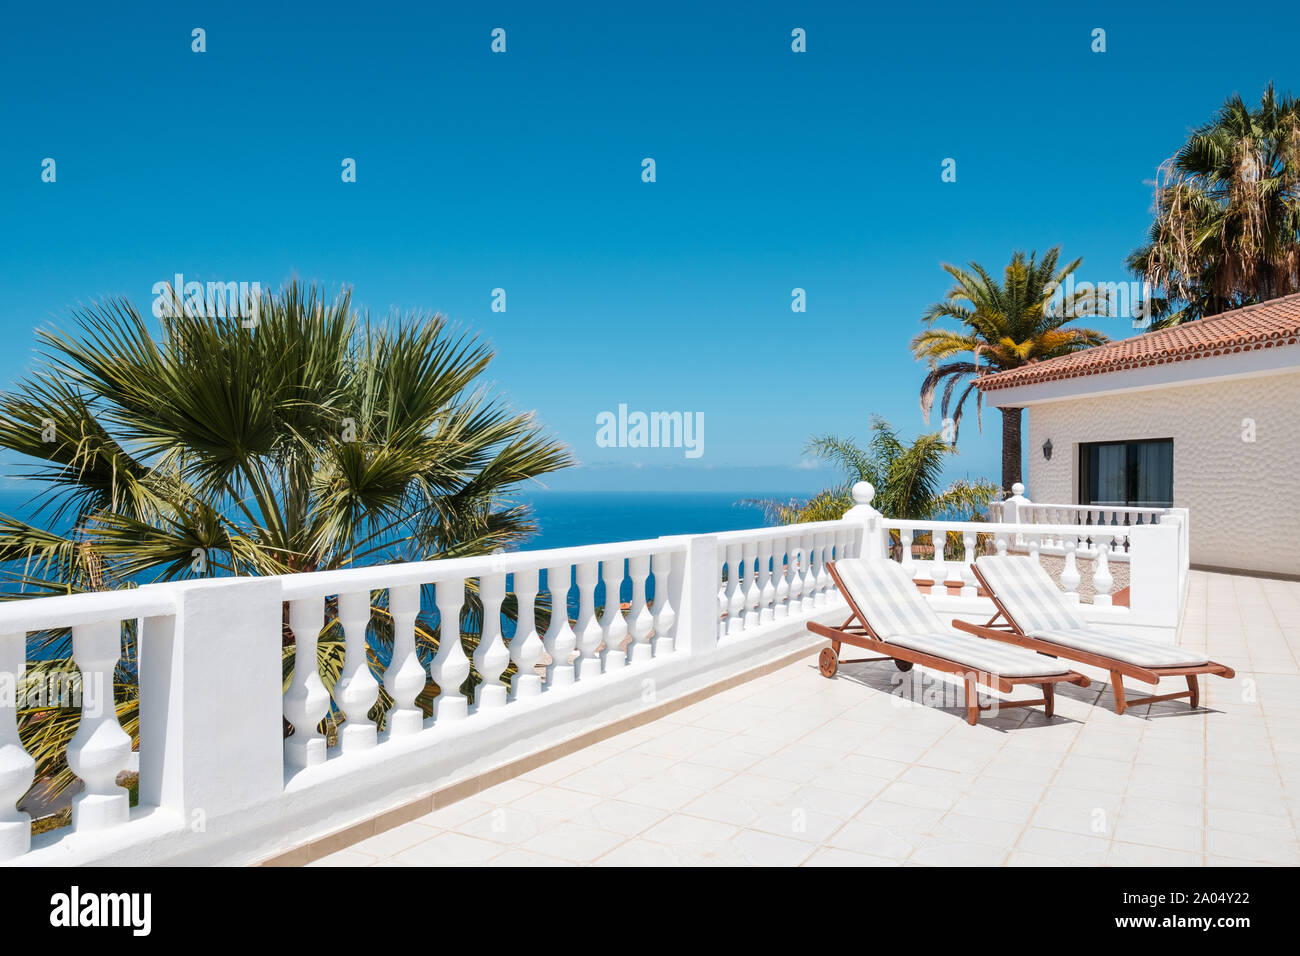 Terrasse ensoleillée avec des chaises longues de ocean view house avec palmiers et ciel bleu copy space Banque D'Images